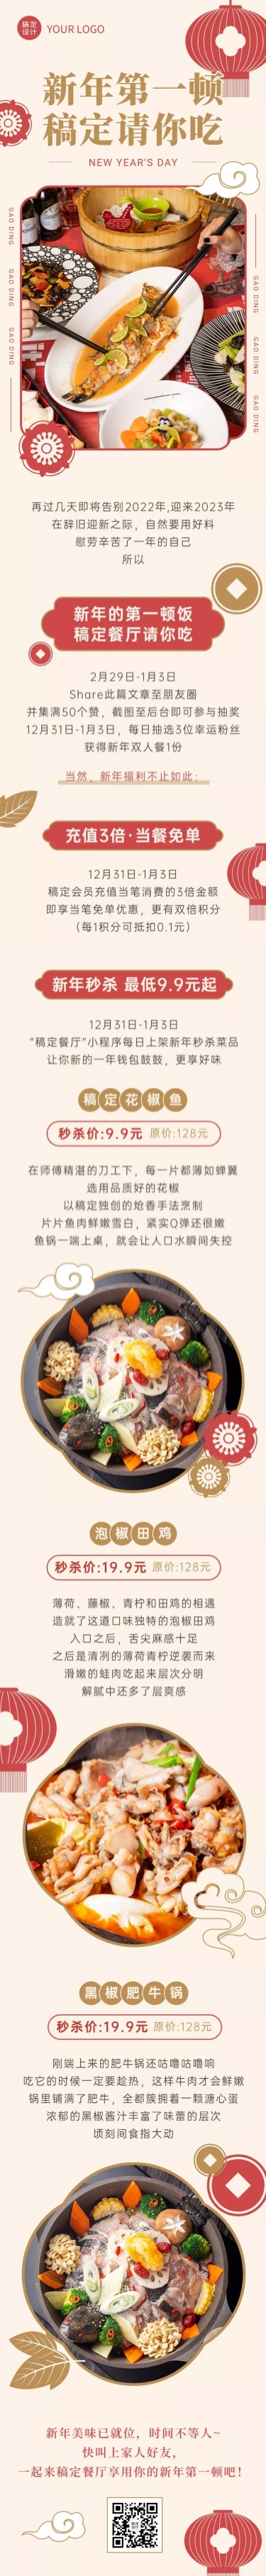 新年餐饮营销中国风文章长图预览效果